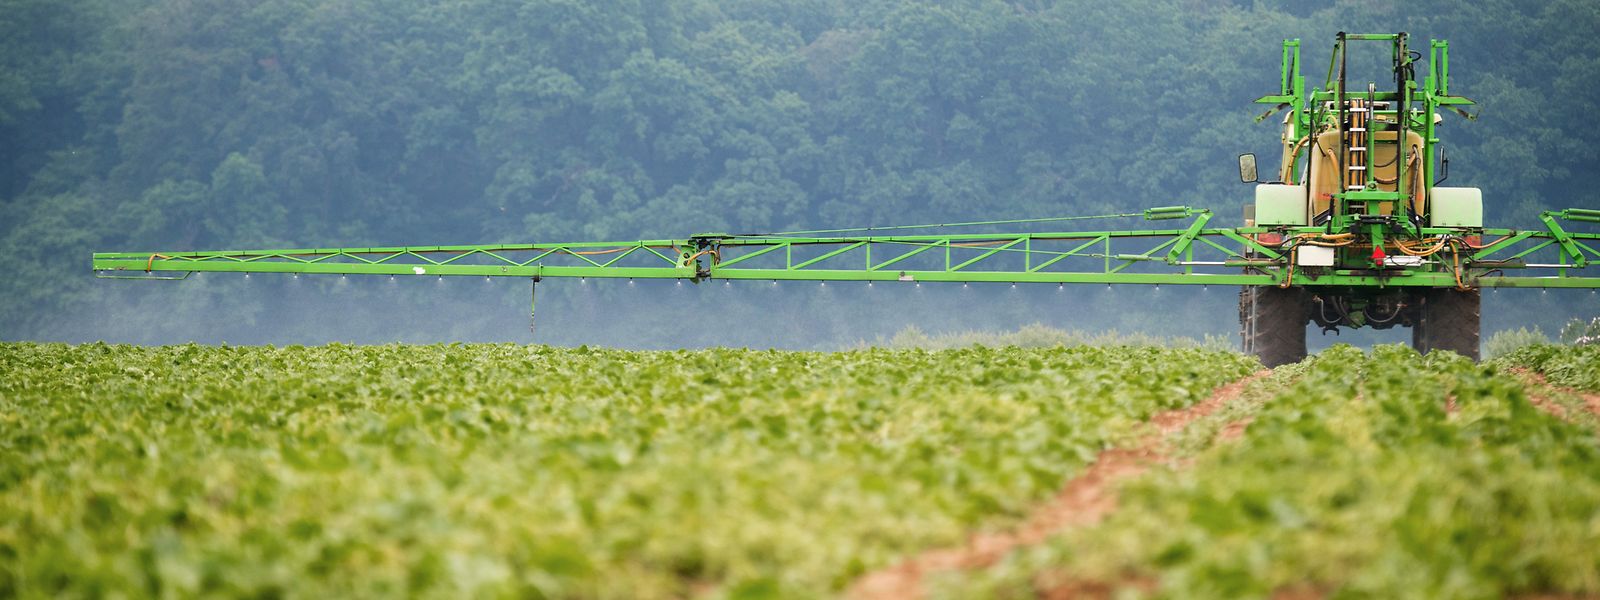 Les pesticides contribuent à la dégradation de la biodiversité, selon les initiateurs de la pétition européenne.